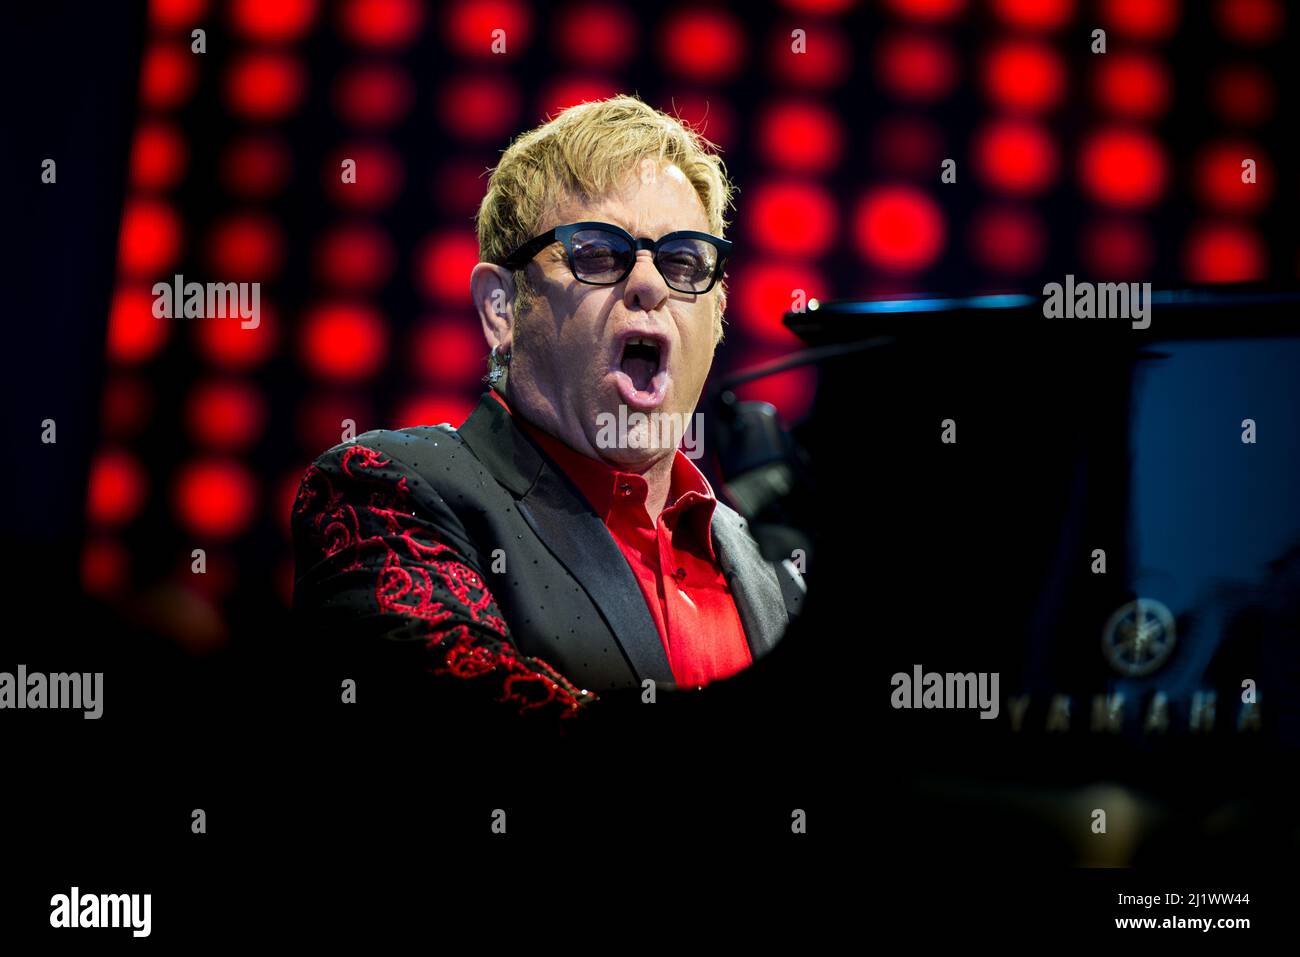 ITALY, BAROLO, COLLISIONI FESTIVAL 2016: Il cantante, pianista e compositore inglese Sir Elton John (nato Reginald Kenneth Dwight) si esibisce dal vivo al Collisioni Festival 2016 di Barolo per il suo tour "Wonderful Crazy Night" Foto Stock